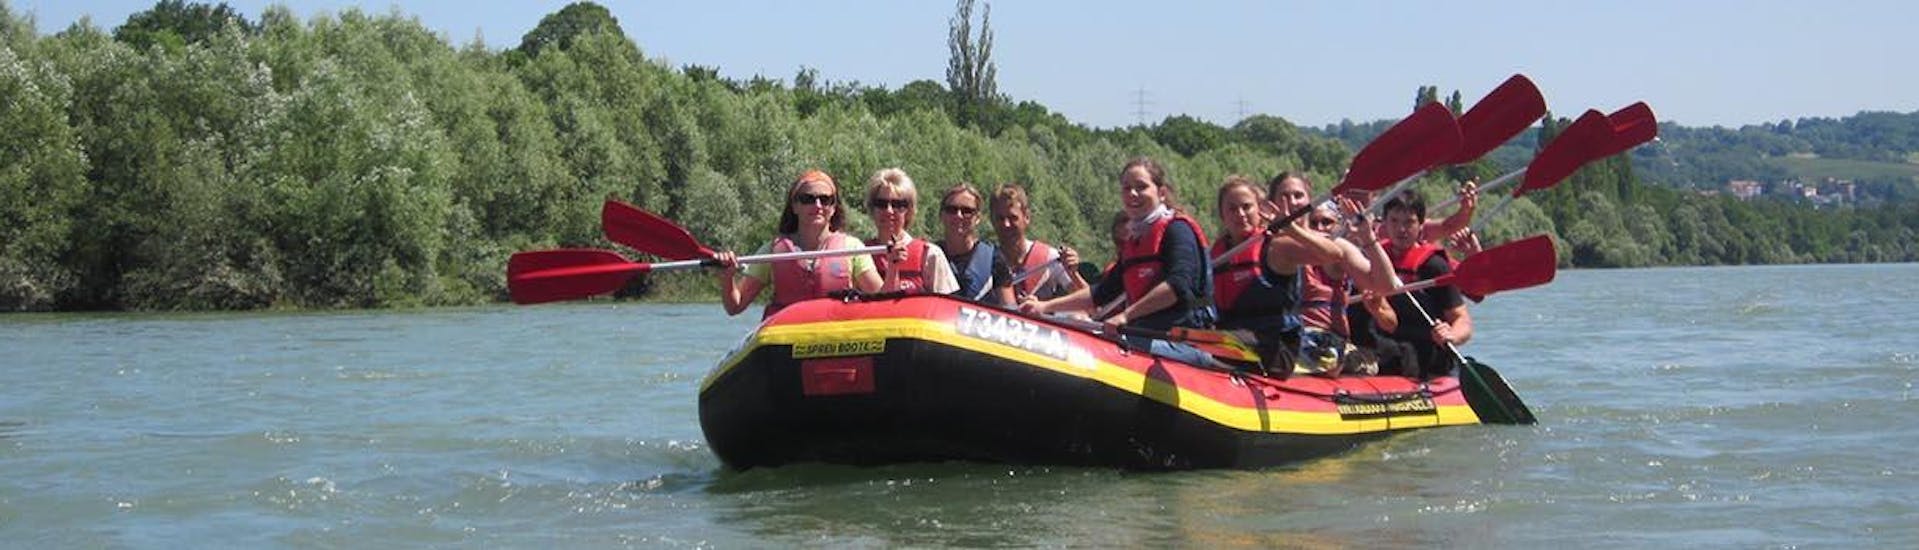 Leute, die sich beim Rafting "Soft" für Gruppen (15+ Personen) amüsieren - Rhein.